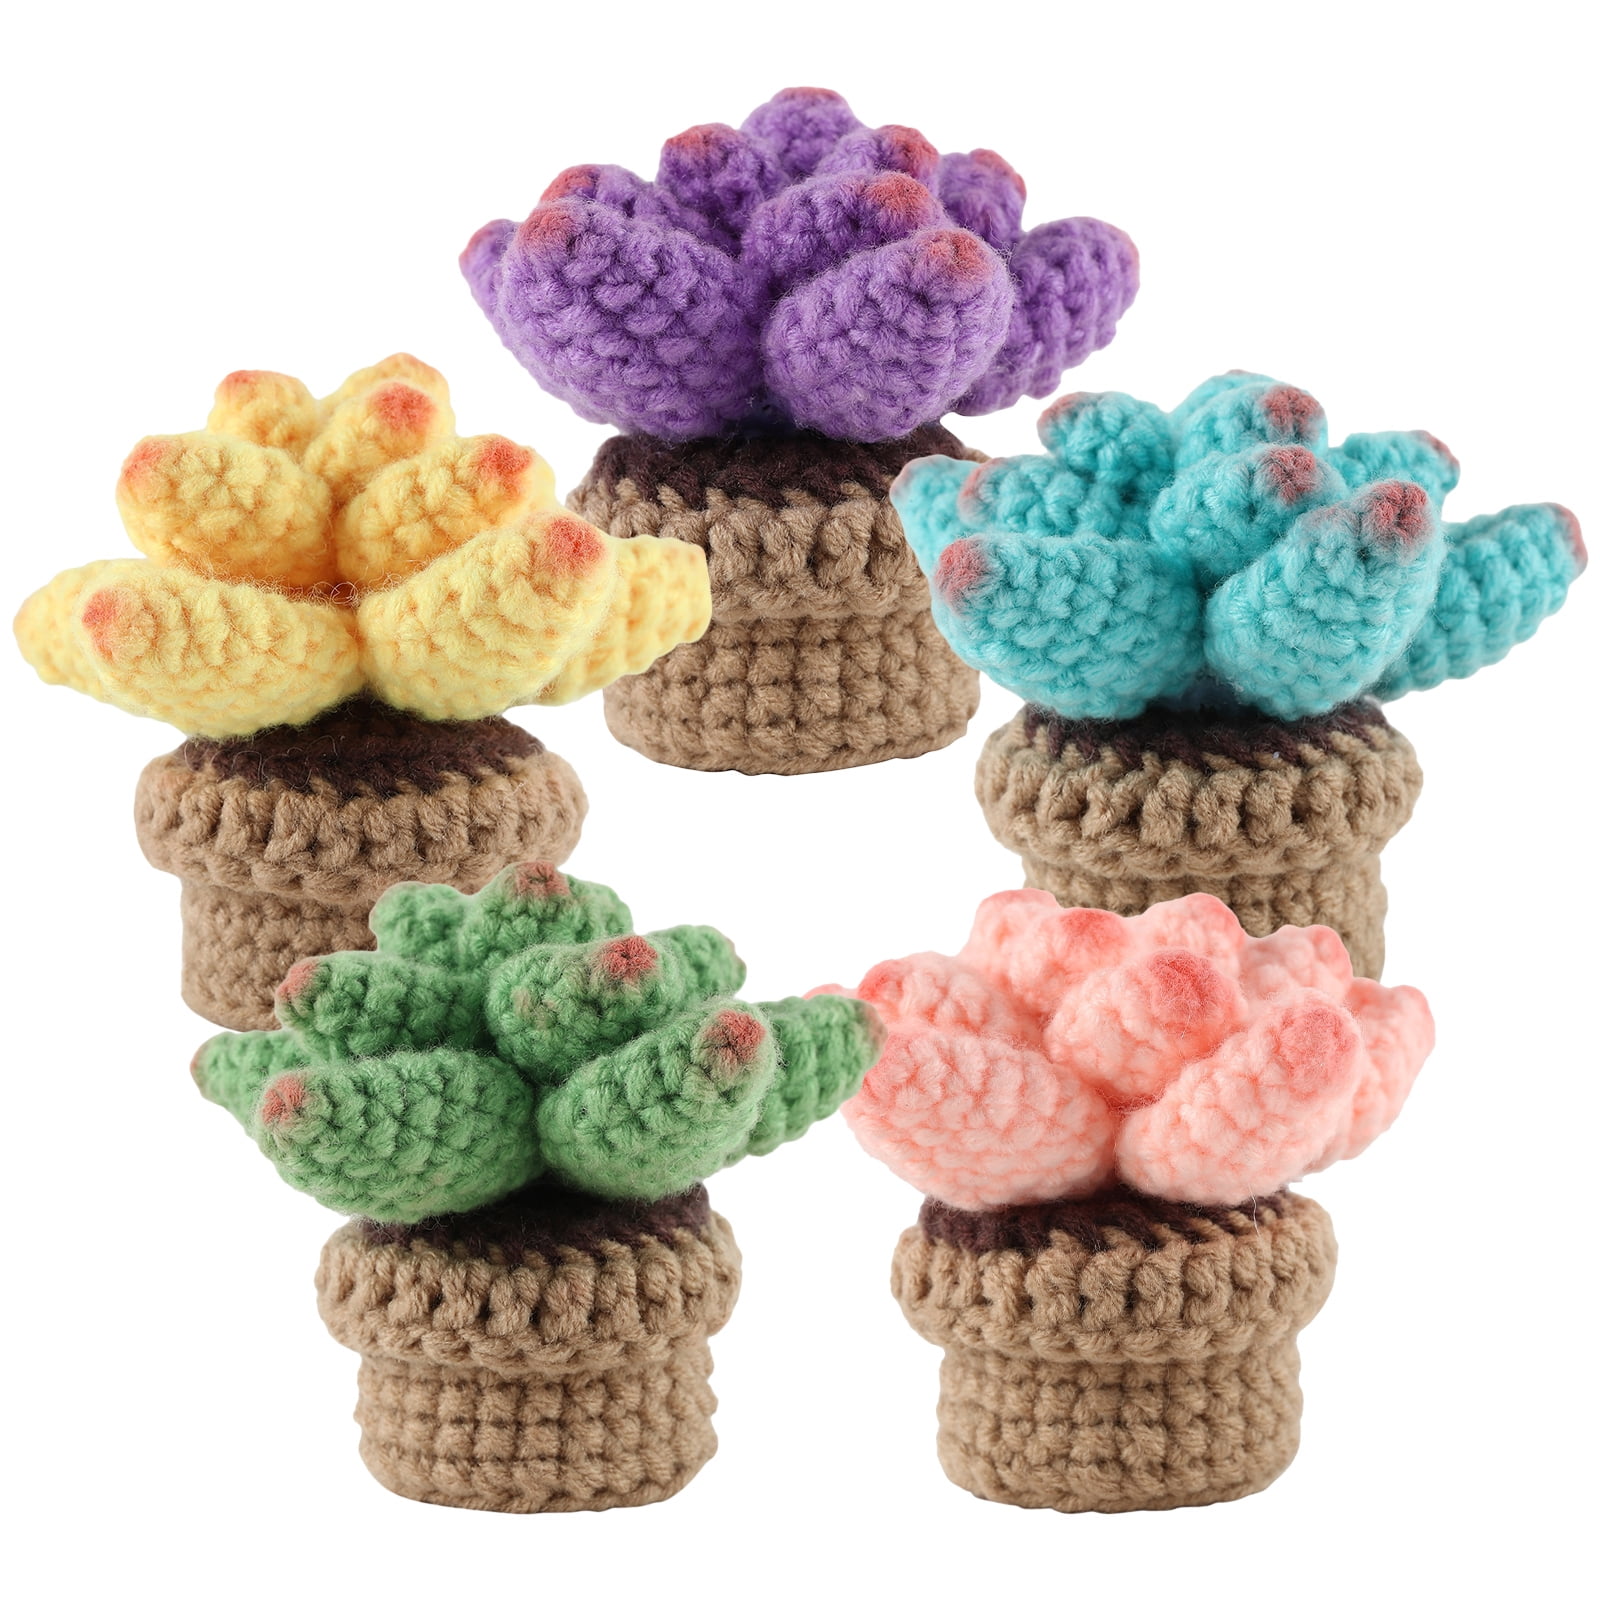 TENGYES Crochet Kit for Beginners - 5Pcs Succulents, Beginner Crochet  Starter Kits for Complete Beginners Adults and Kids, Crocheting Knitting  Kit